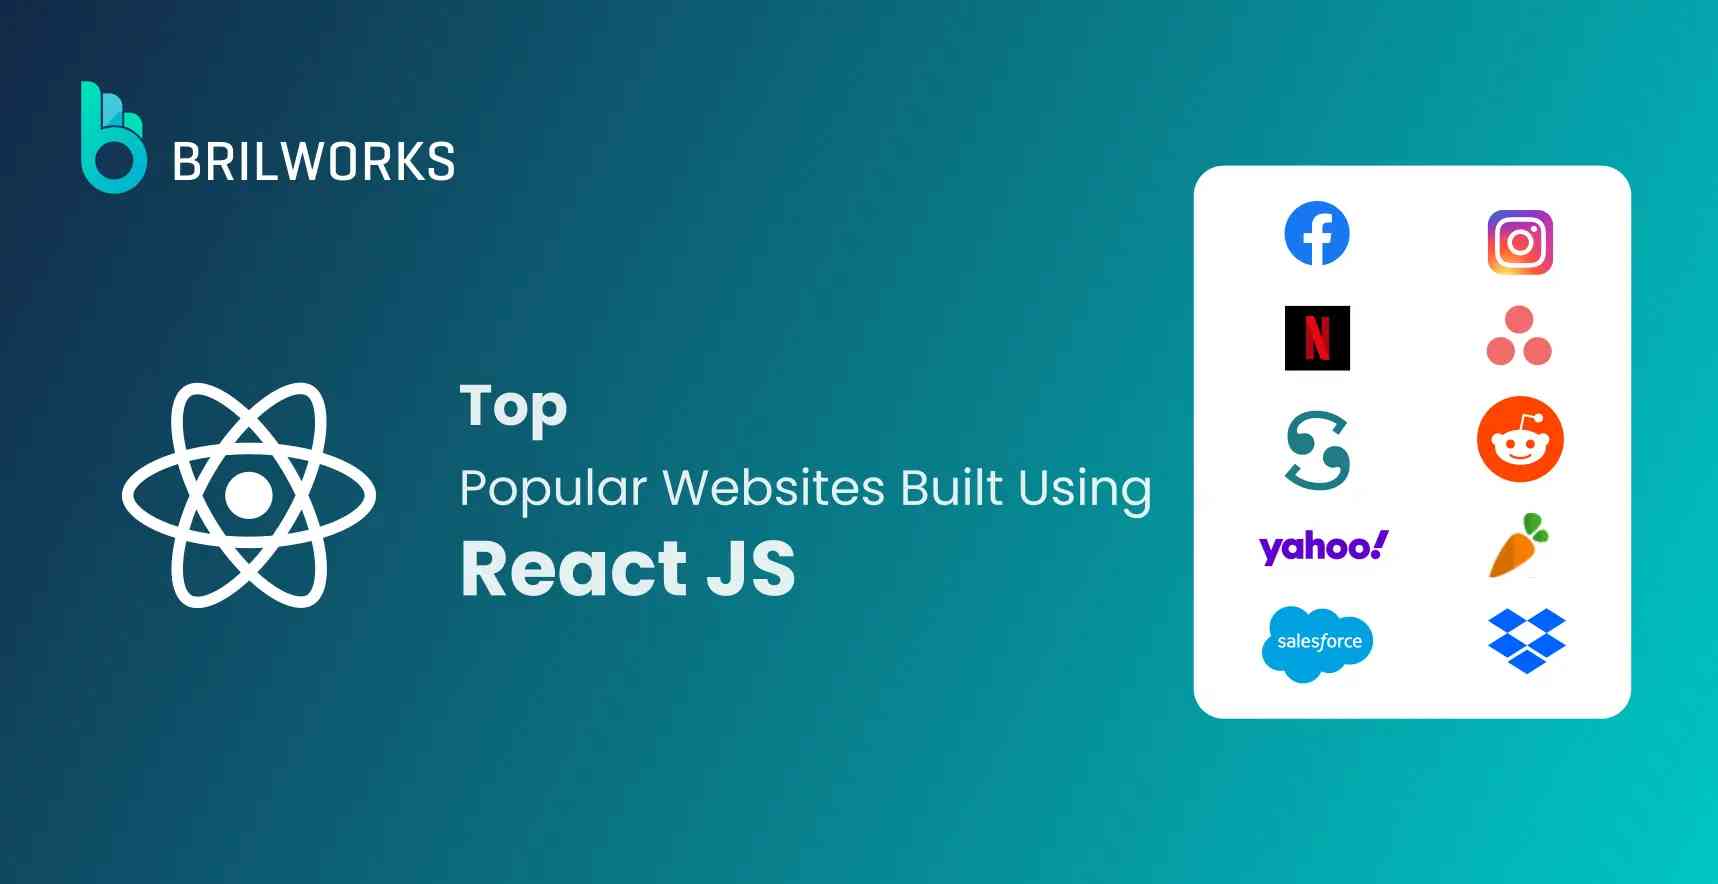 banner-top-10-websites-built-using-react-js